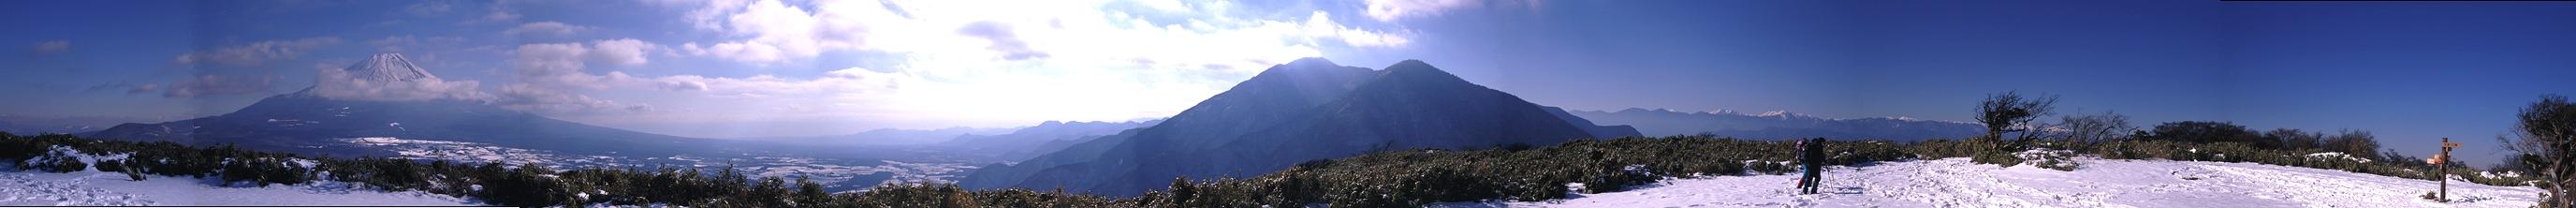 竜ヶ岳頂上からの展望。左から富士山、朝霧高原、雨ガ岳（後ろに毛無山）、南アルプスの白いナイフエッジ